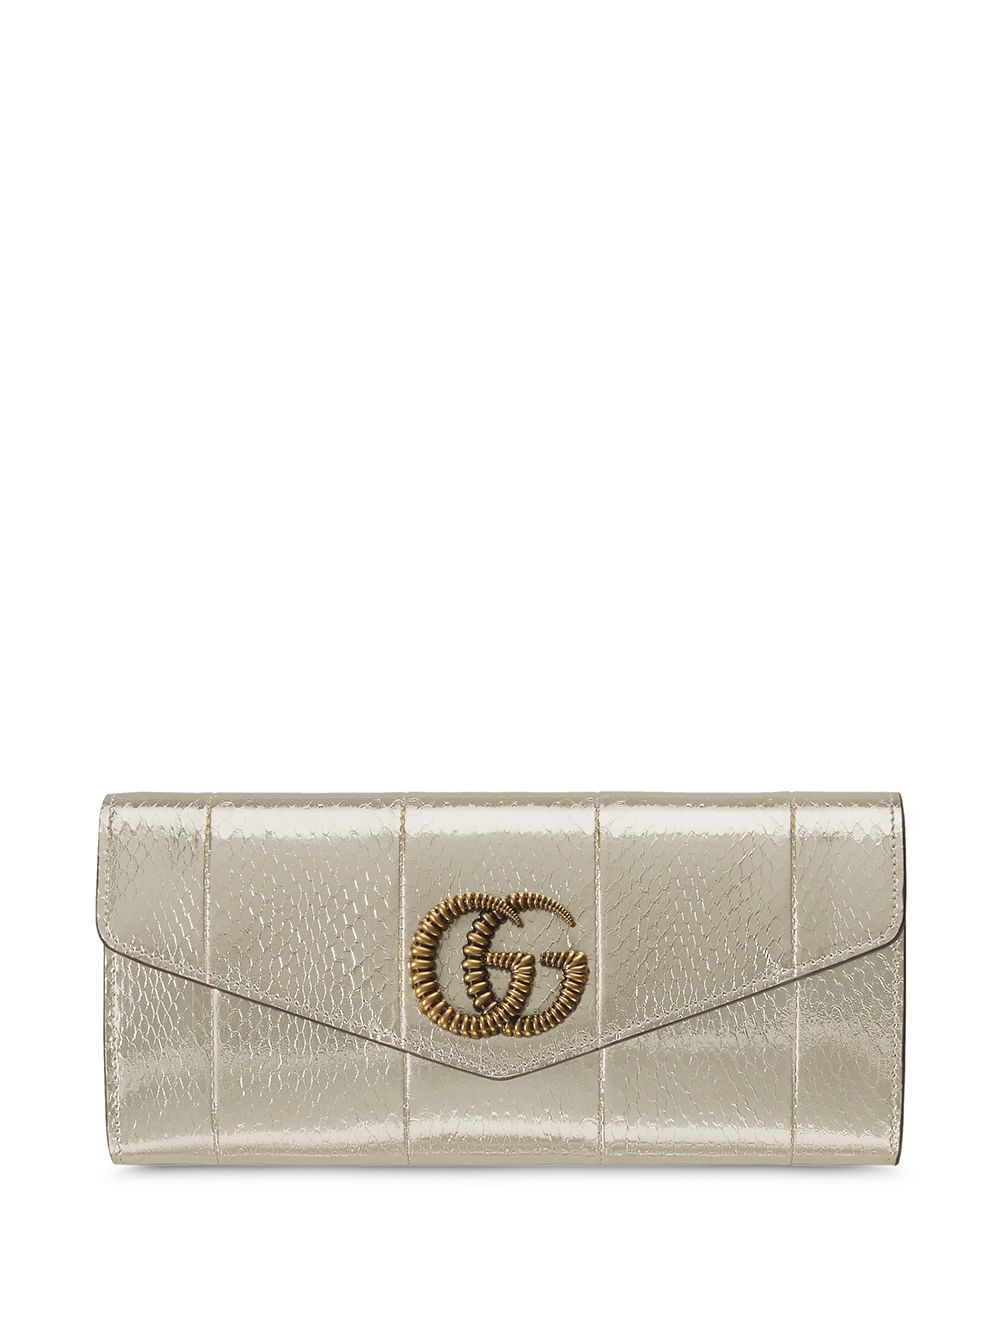 фото Gucci клатч broadway с логотипом gg